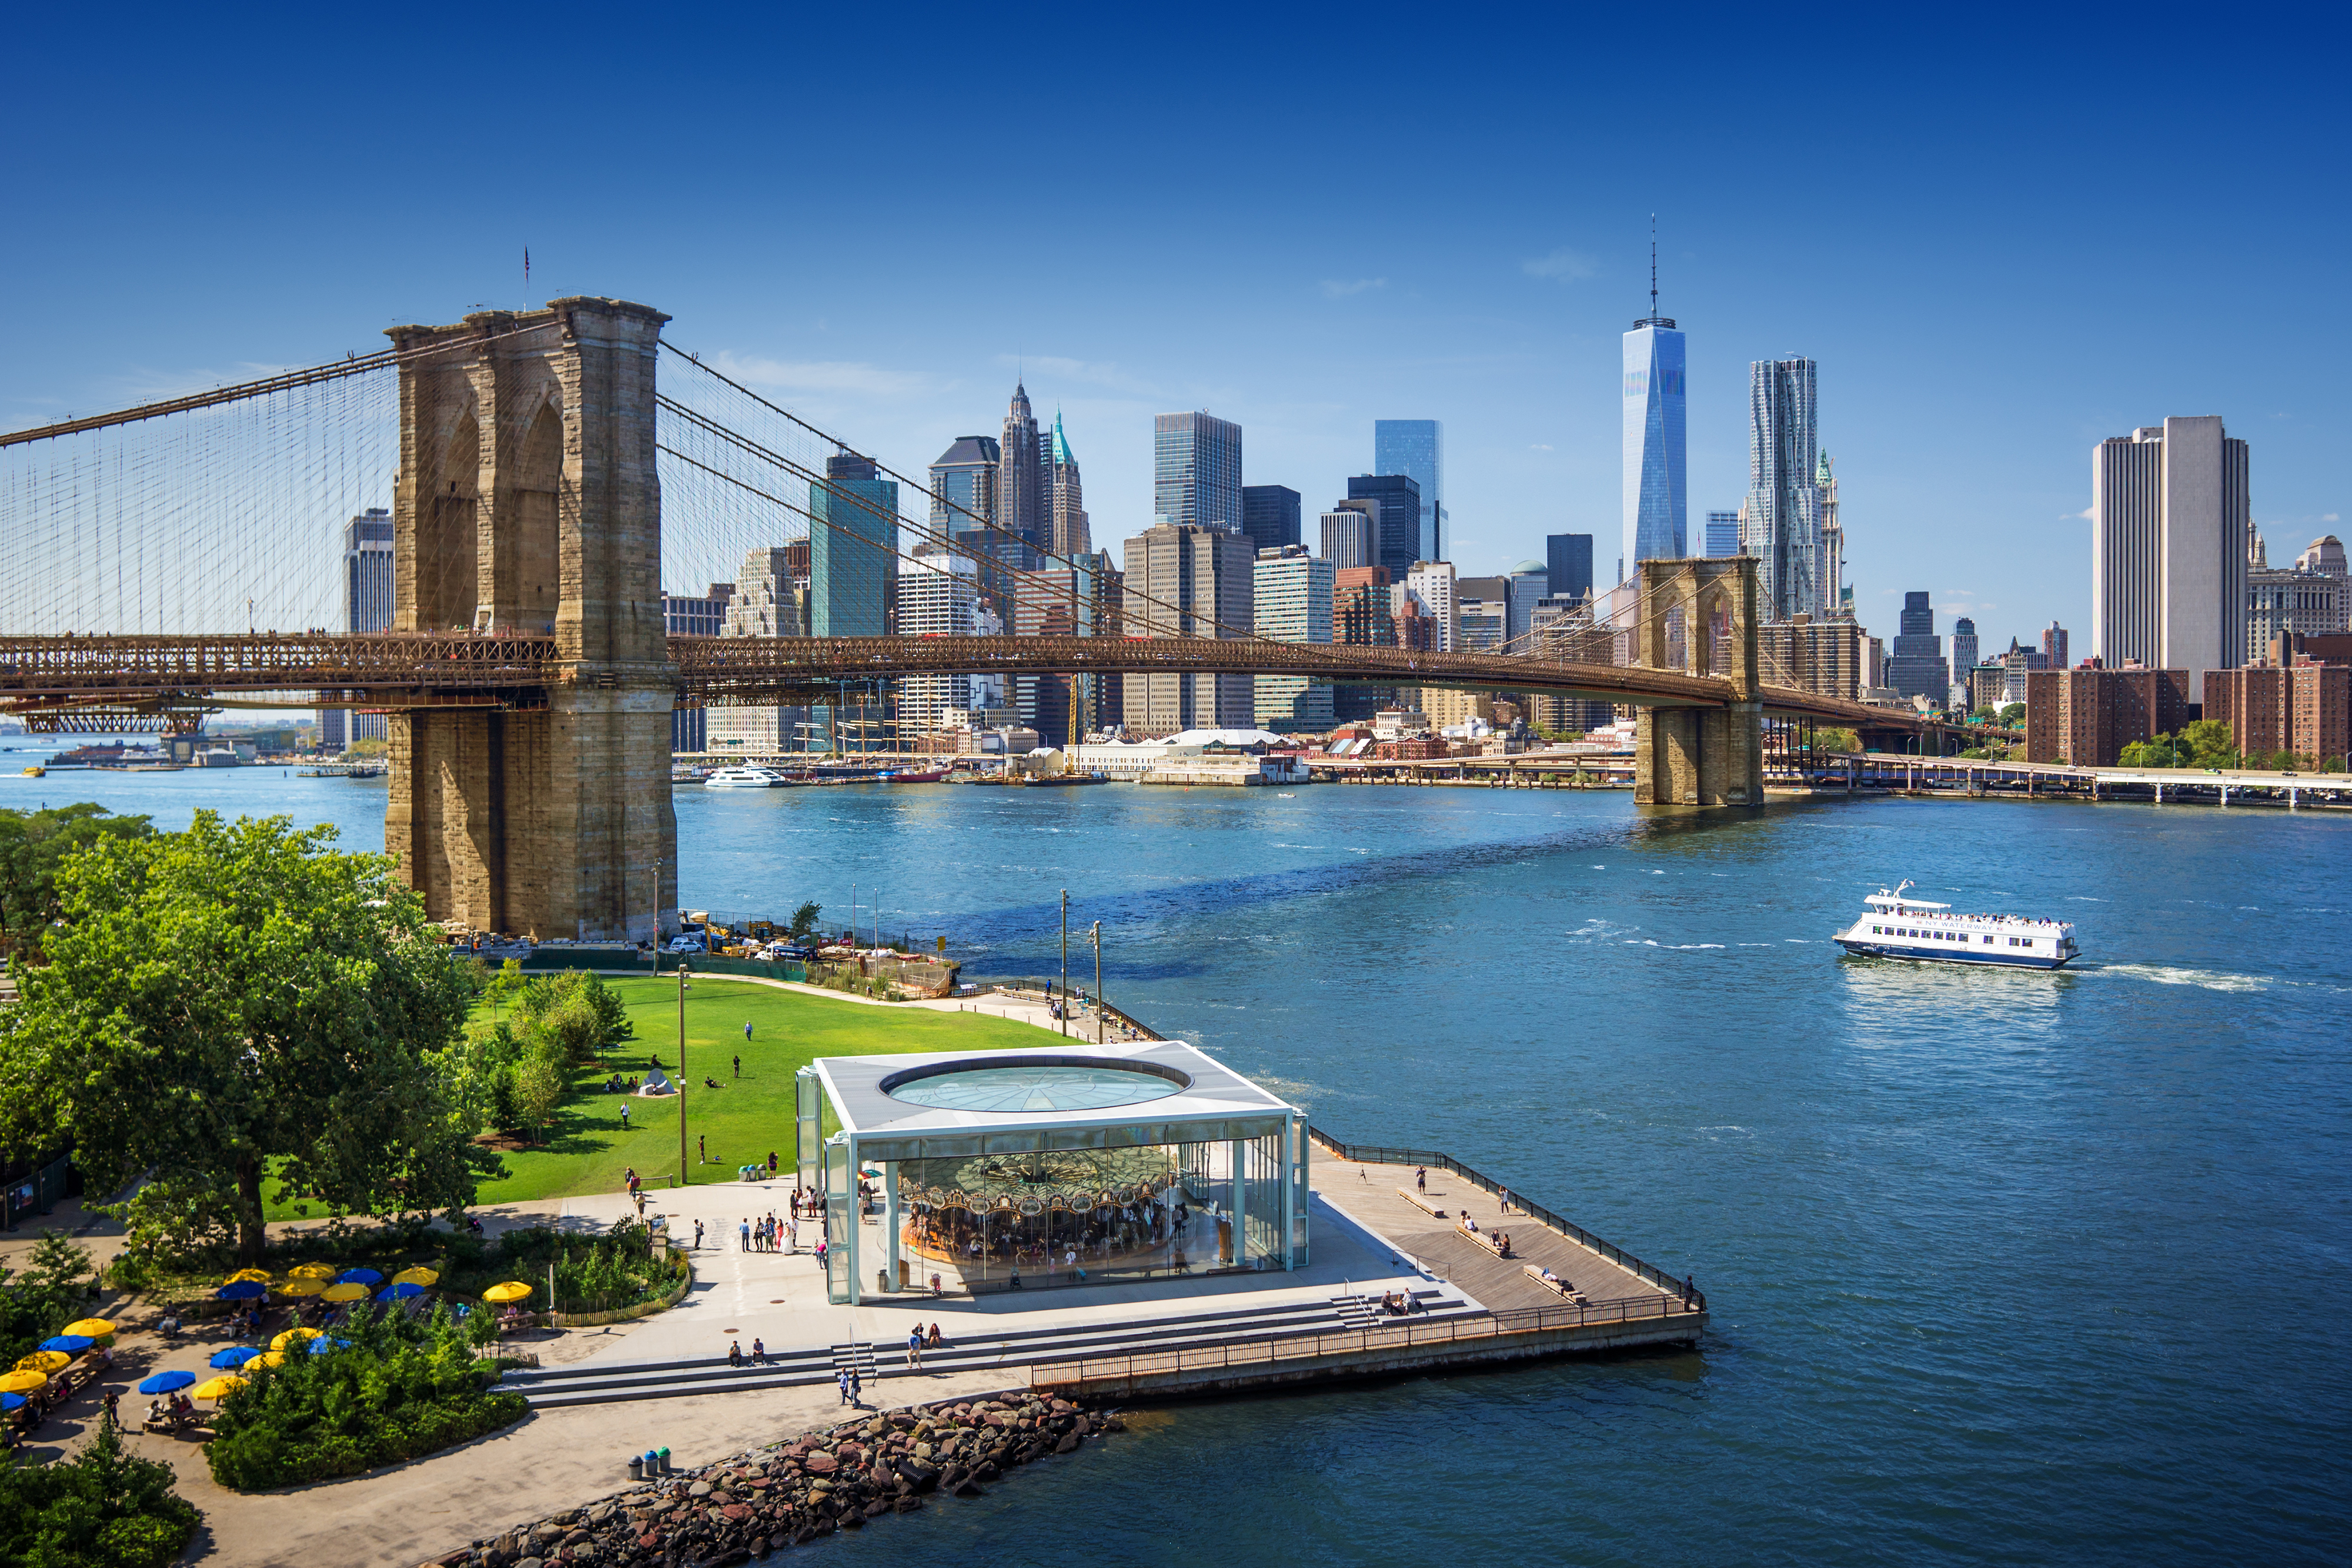 Панорама Нью-Йорка как символ программы иммиграции в США и получения ПМЖ. Переезд в США на ПМЖ